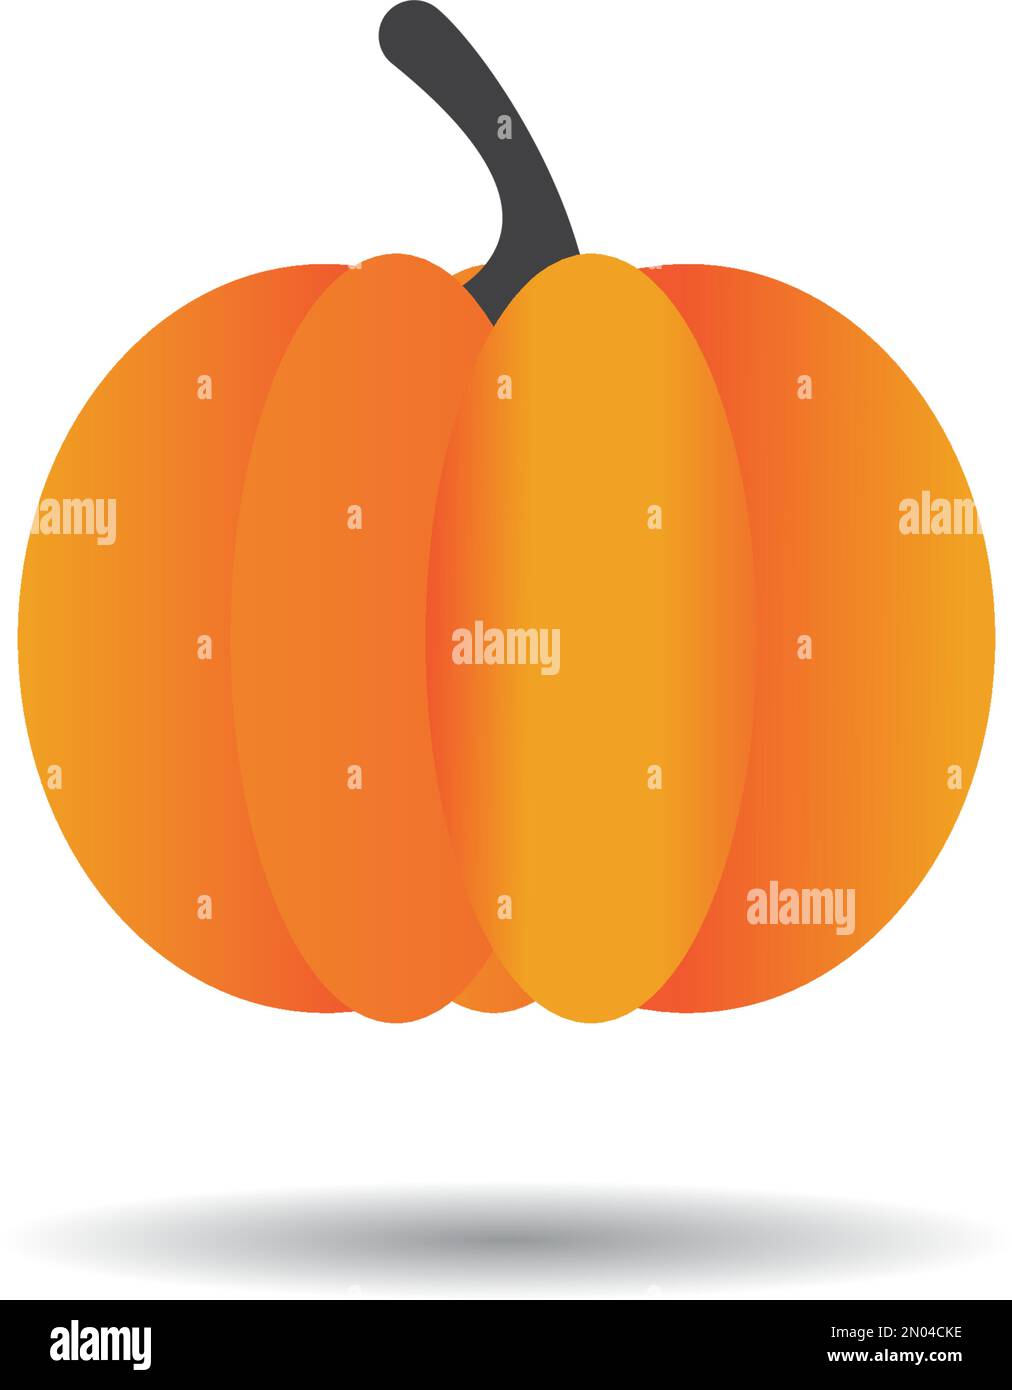 Motif d'illustration représentant un vecteur d'icône de citrouille, citrouille d'halloween d'automne Illustration de Vecteur